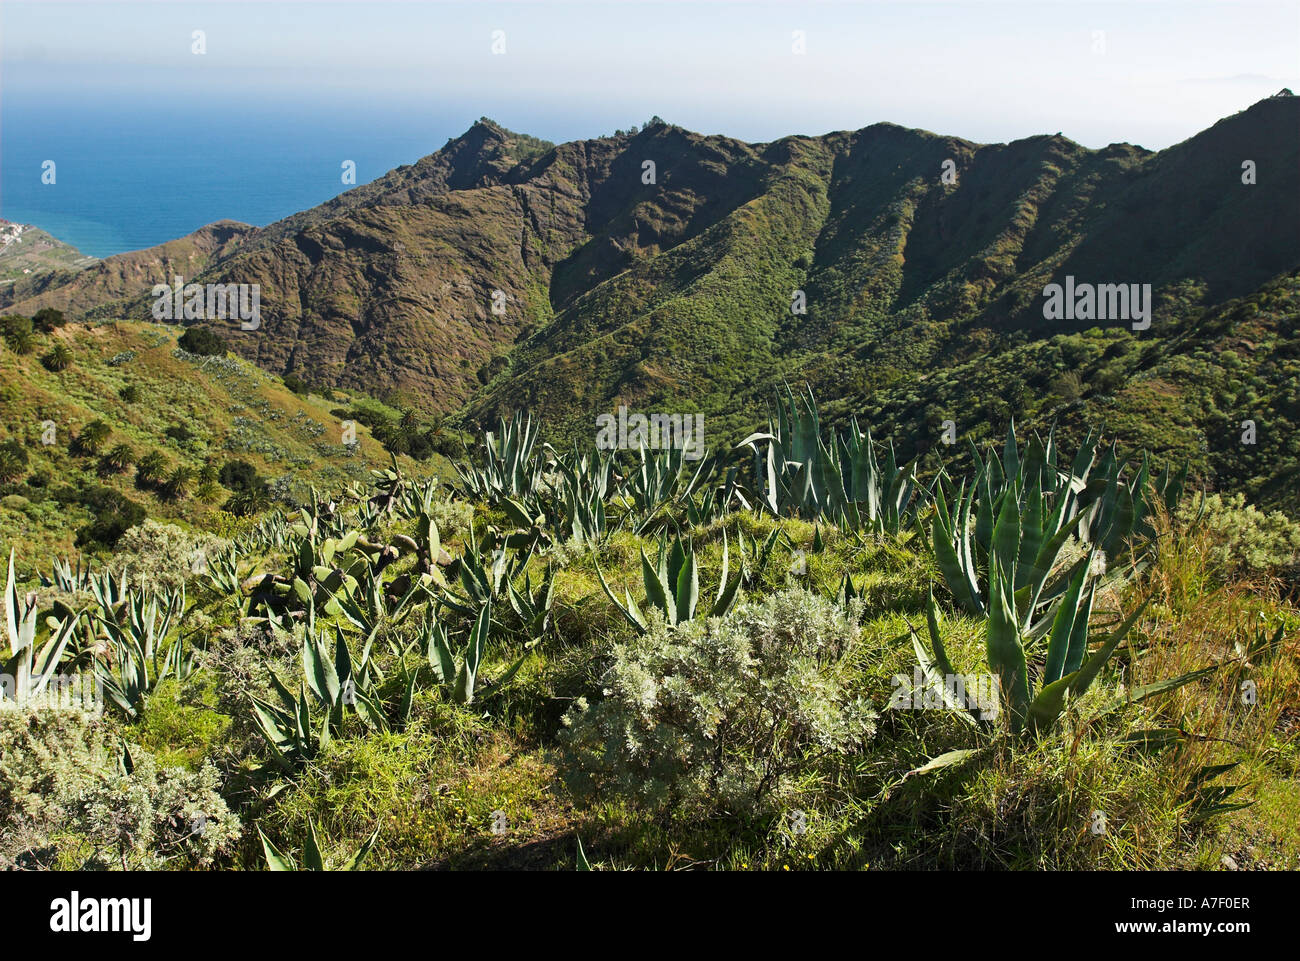 Les montagnes avec les agaves, île de La Gomera, Canary Islands, Spain, Europe Banque D'Images